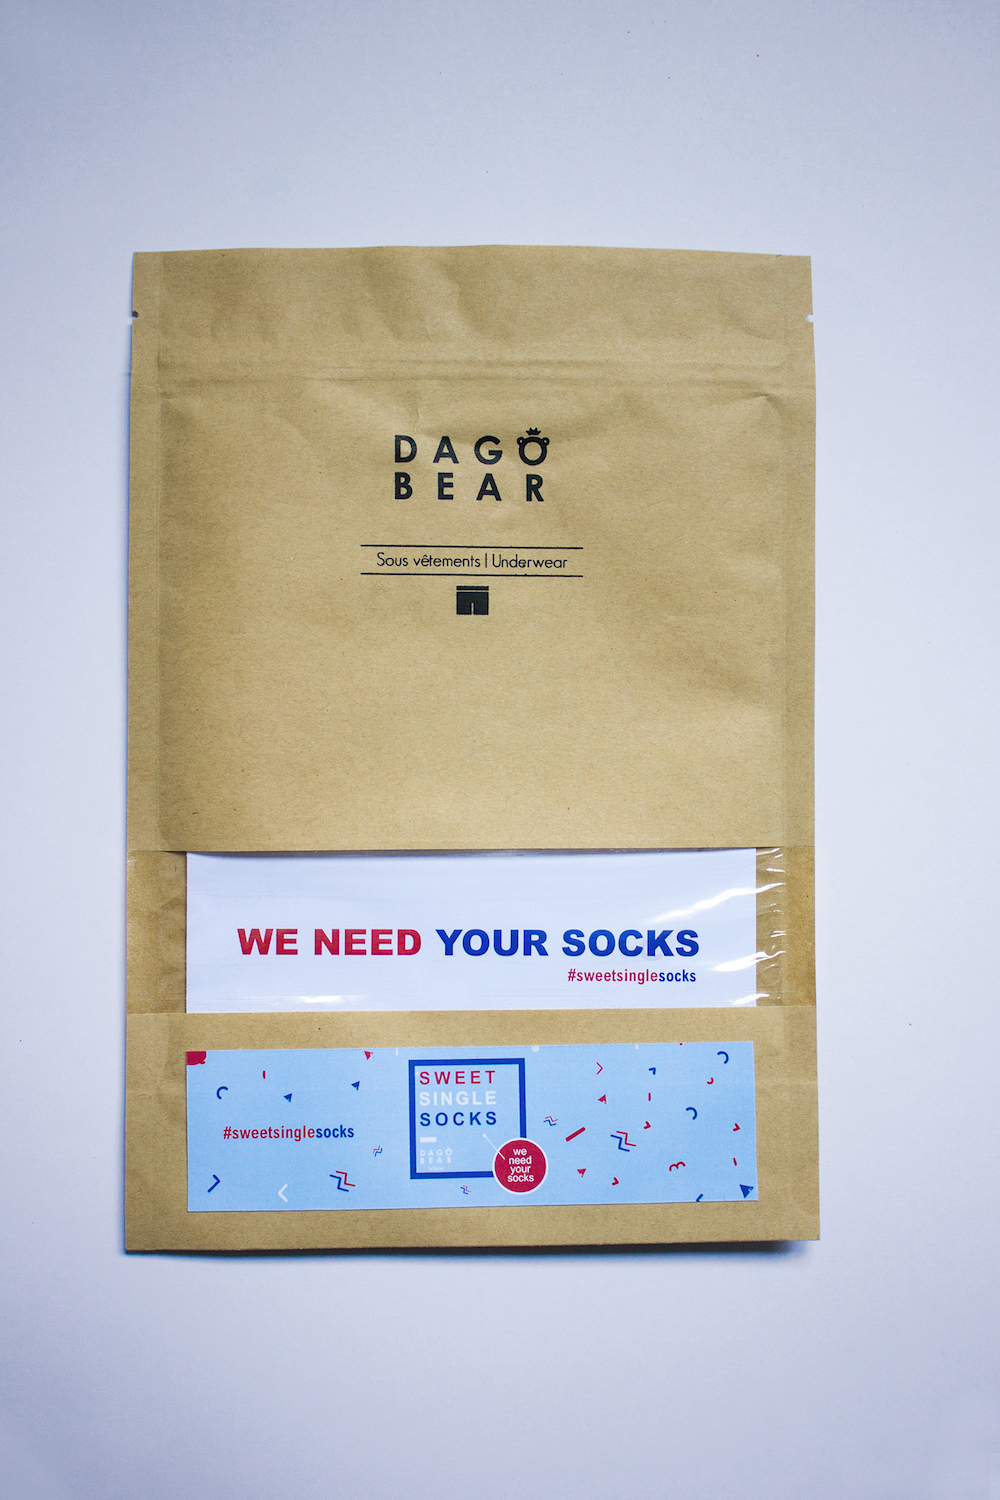 Dagobear-Sweet-Single-Socks-Event-Environement-Agence-Grey-Paris-Ecologie-Habit-Chaussette-2016-Pub-Publicité-Campagne-Video-Ad-Advertising-TBTC-G-Communication-04